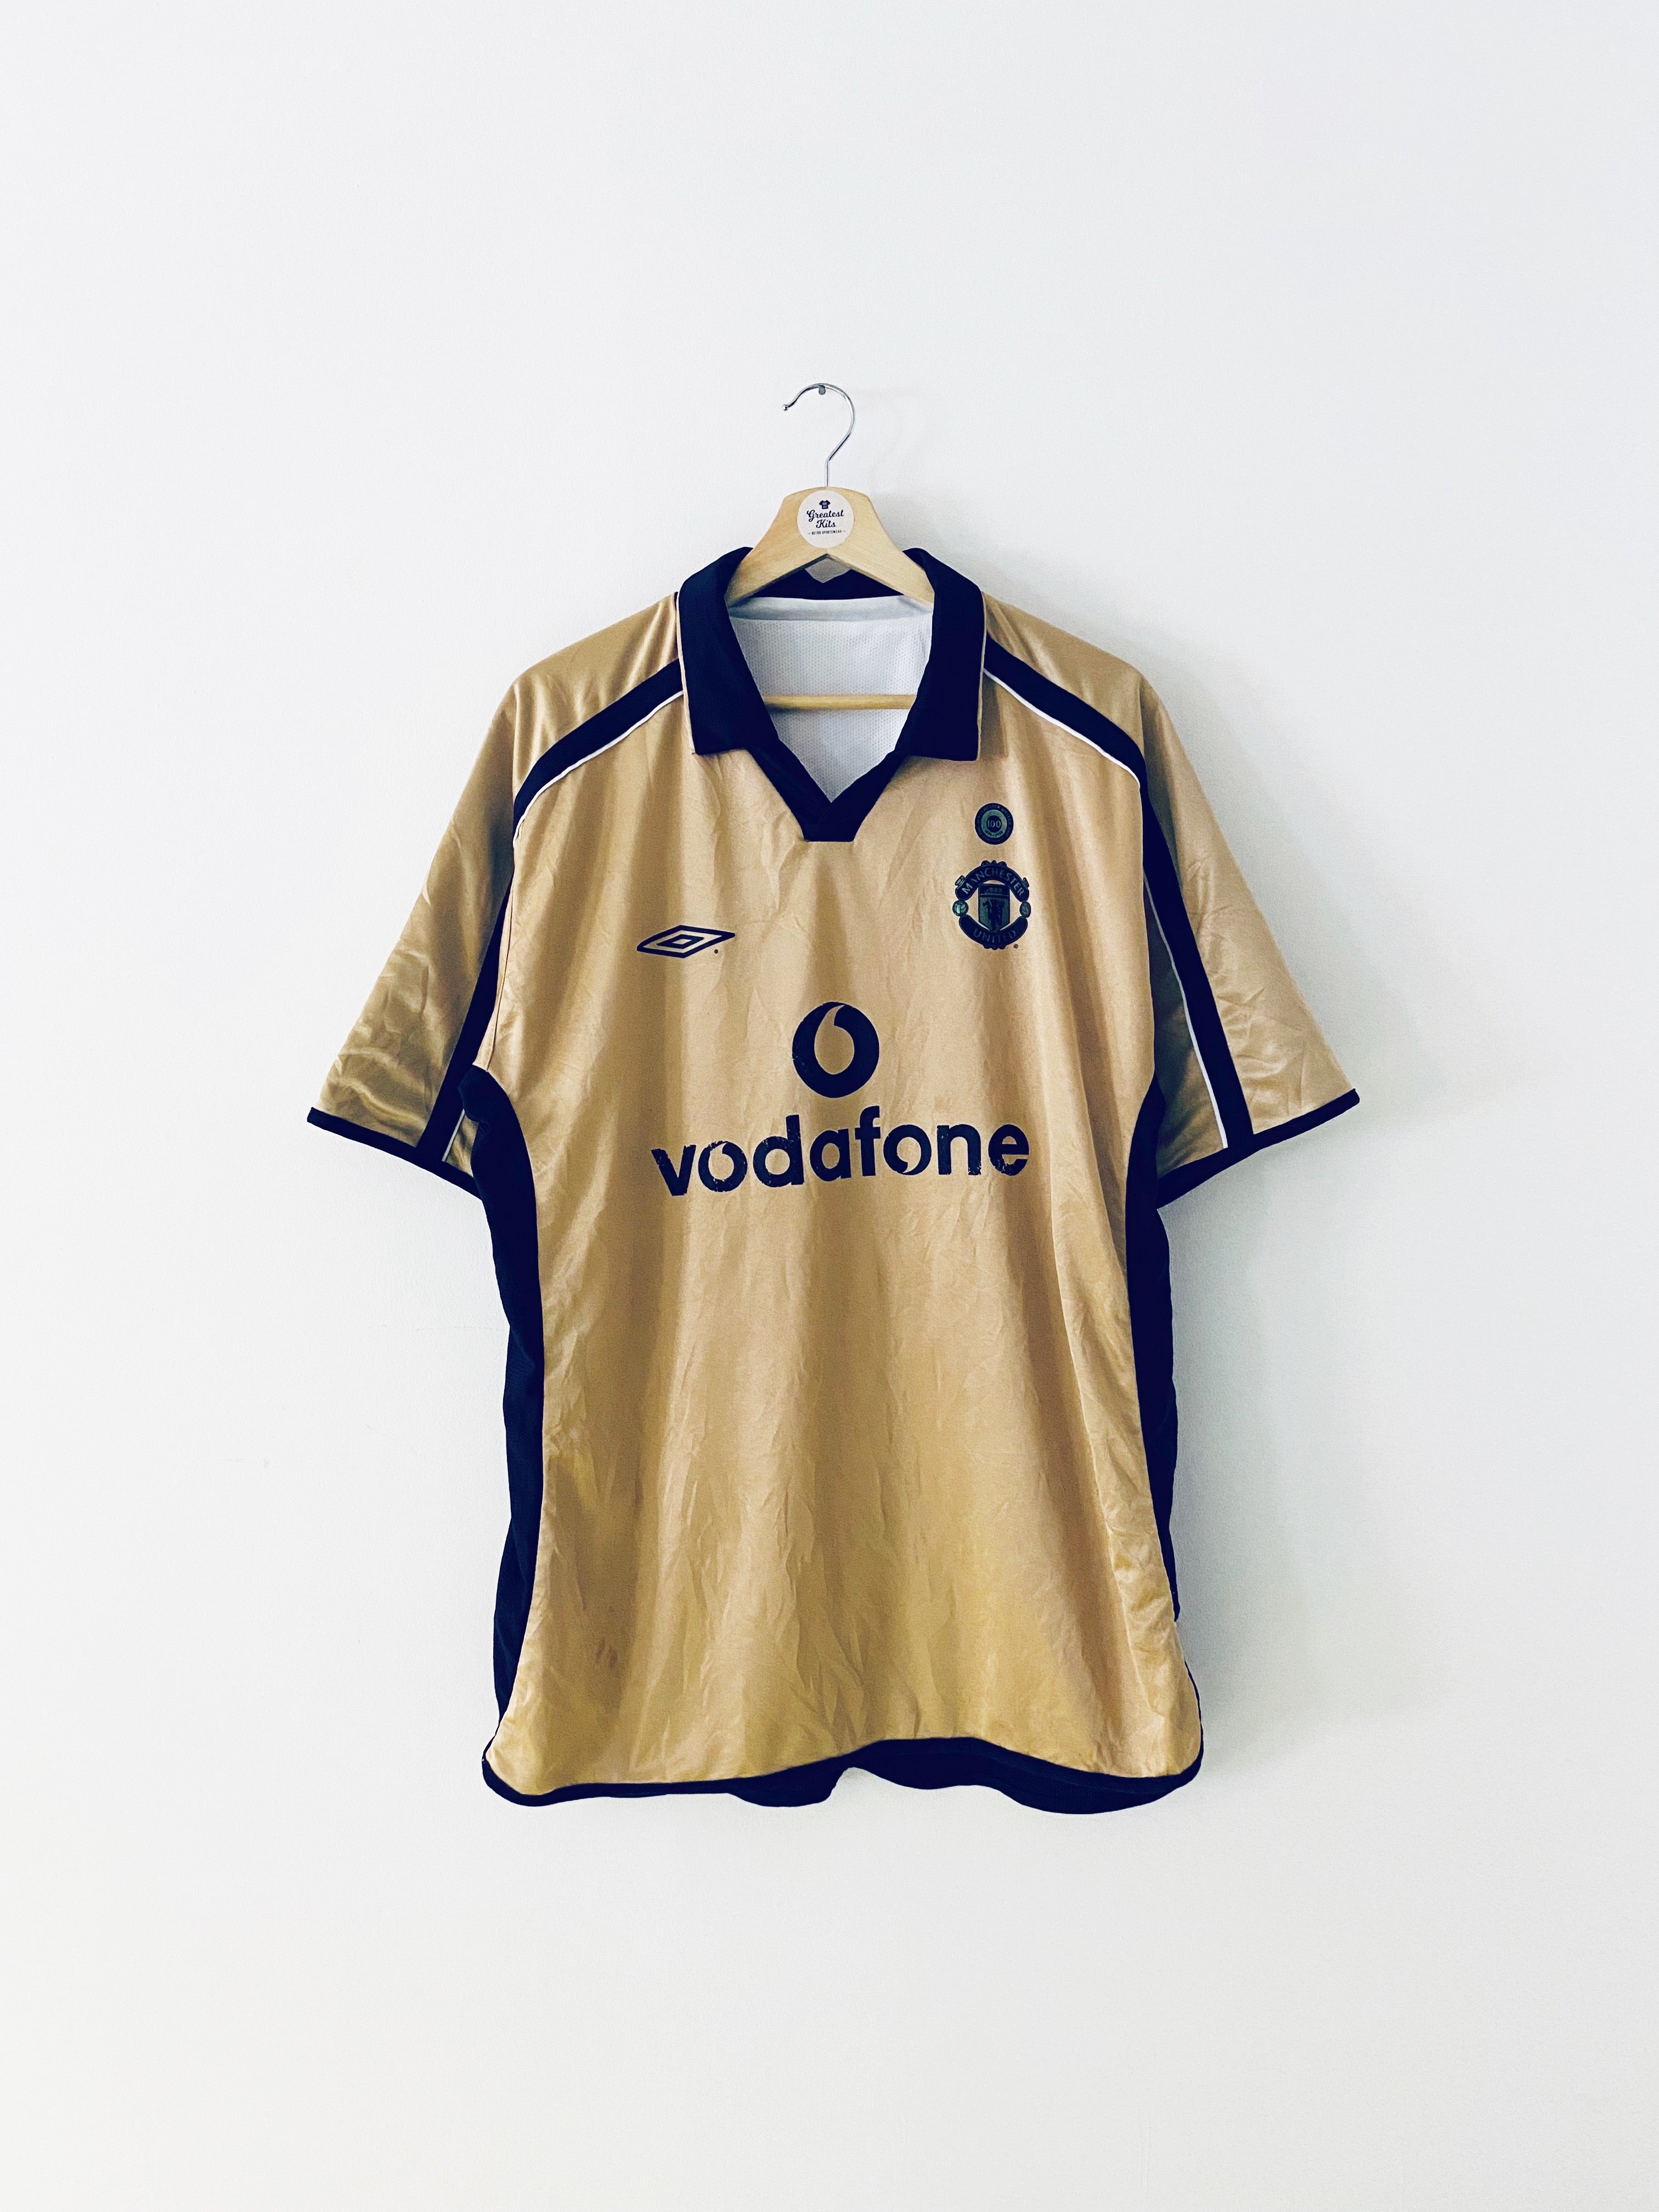 2001/02 Manchester United Away/Third Centenary Shirt (XL) 7/10